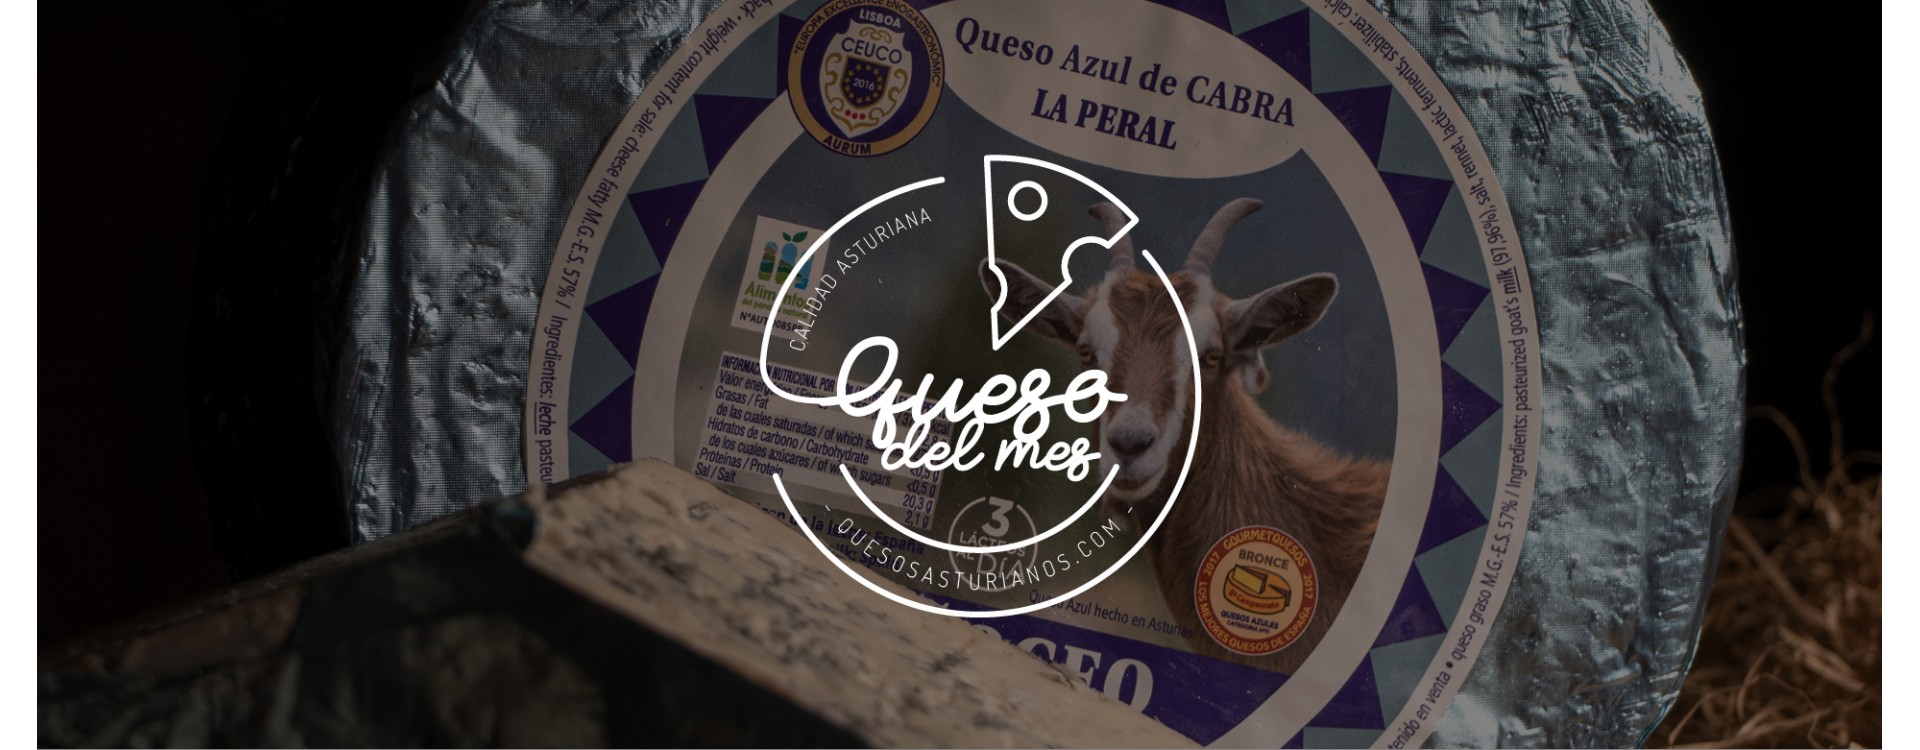 Quesos del Mes de Abril: Peñoceo, el azul de cabra de La Peral